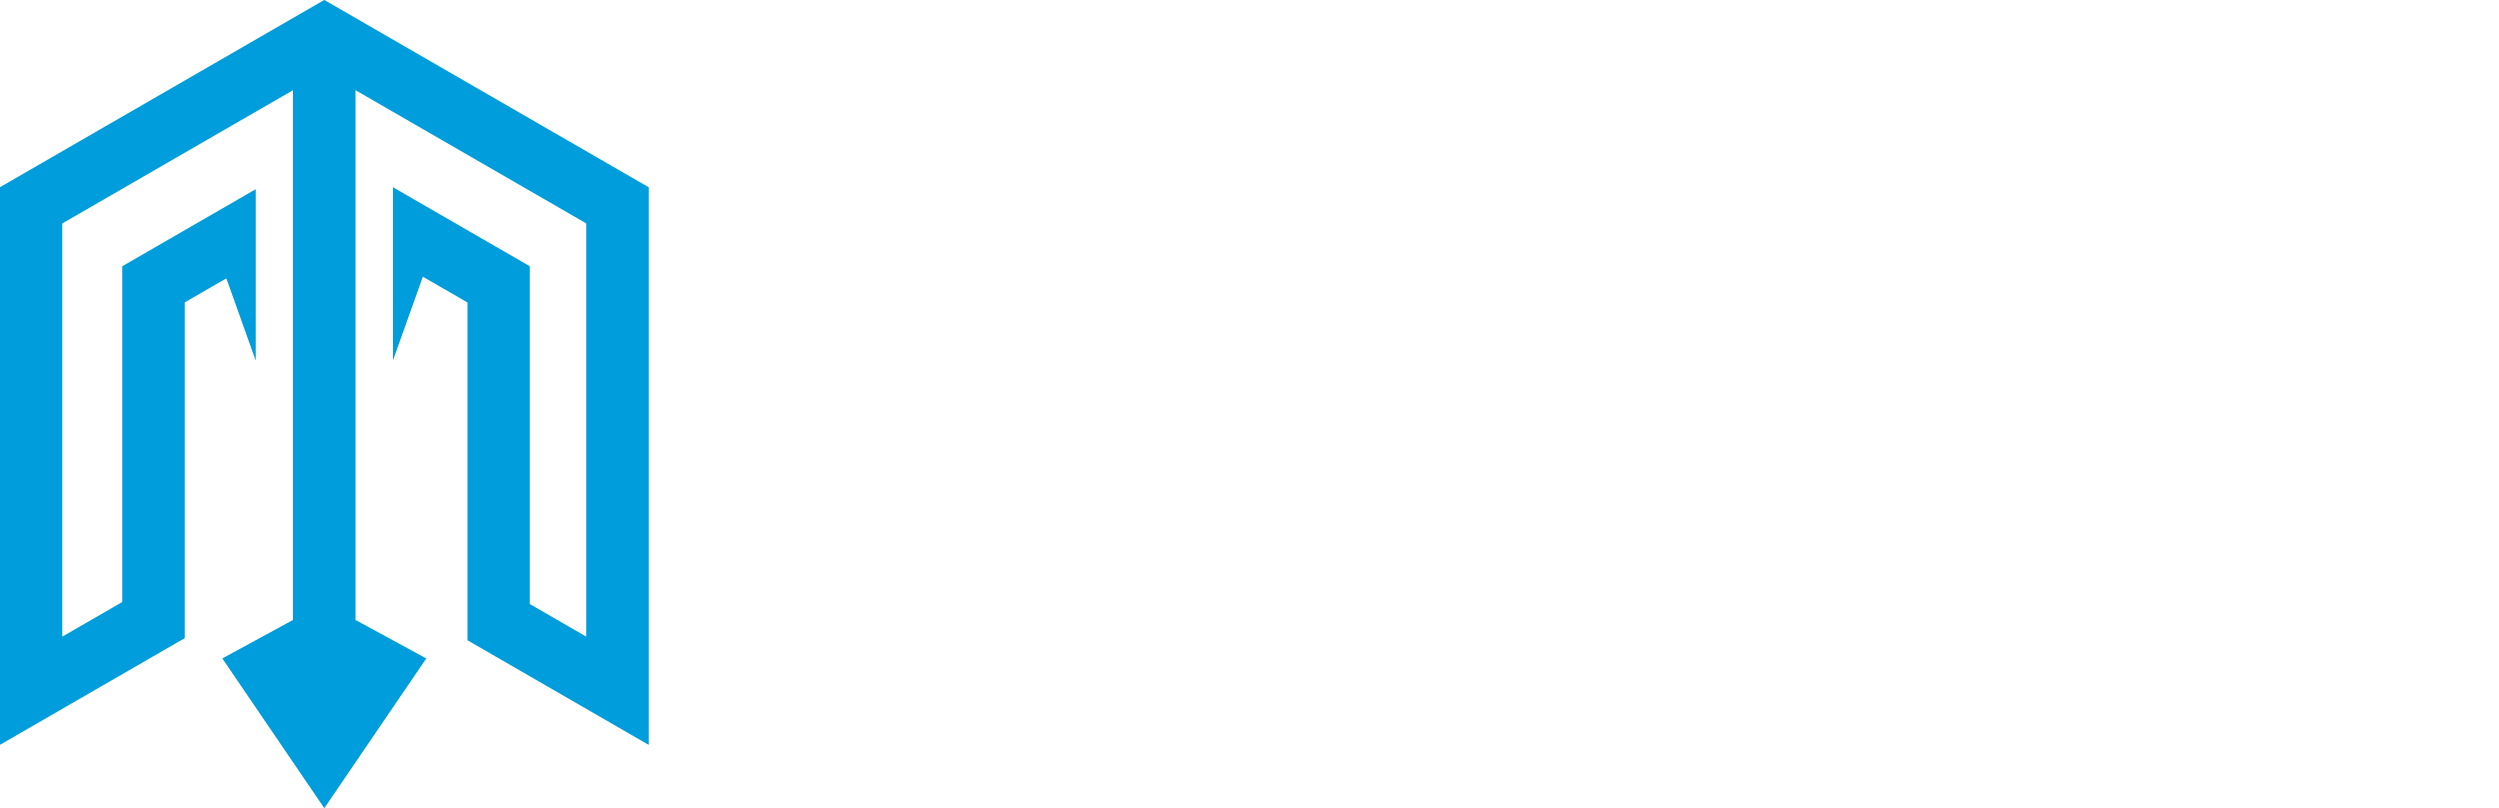 Project Mariana